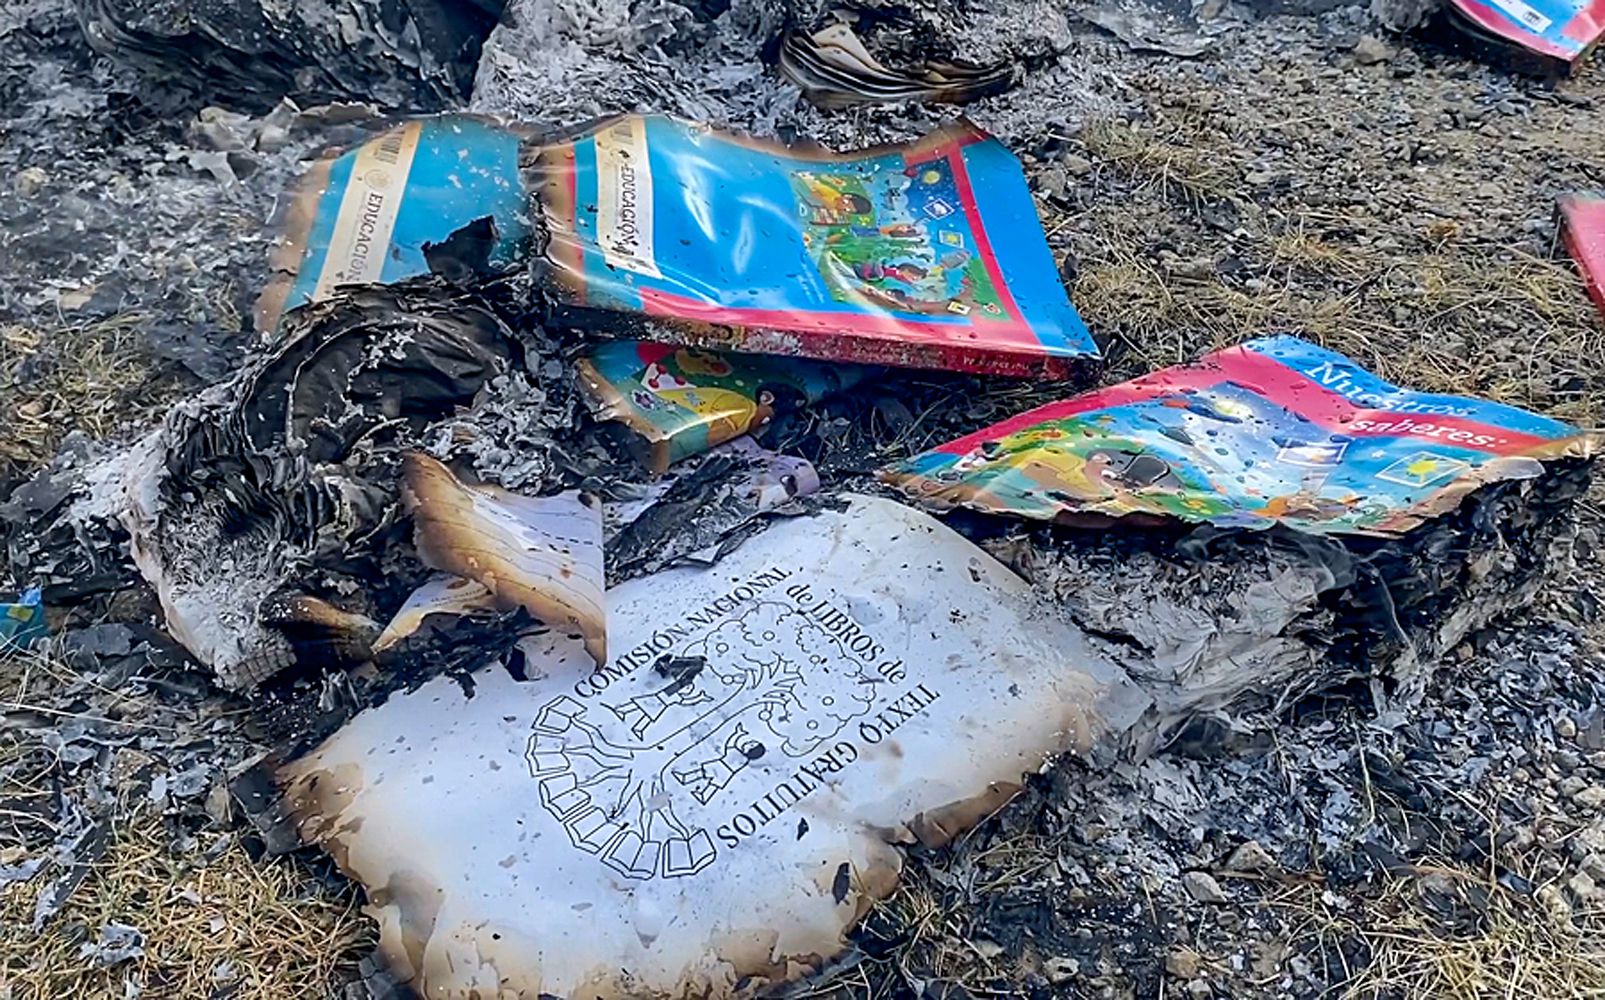 Indígenas del sur de México queman libros escolares por considerar sus contenidos no aptos